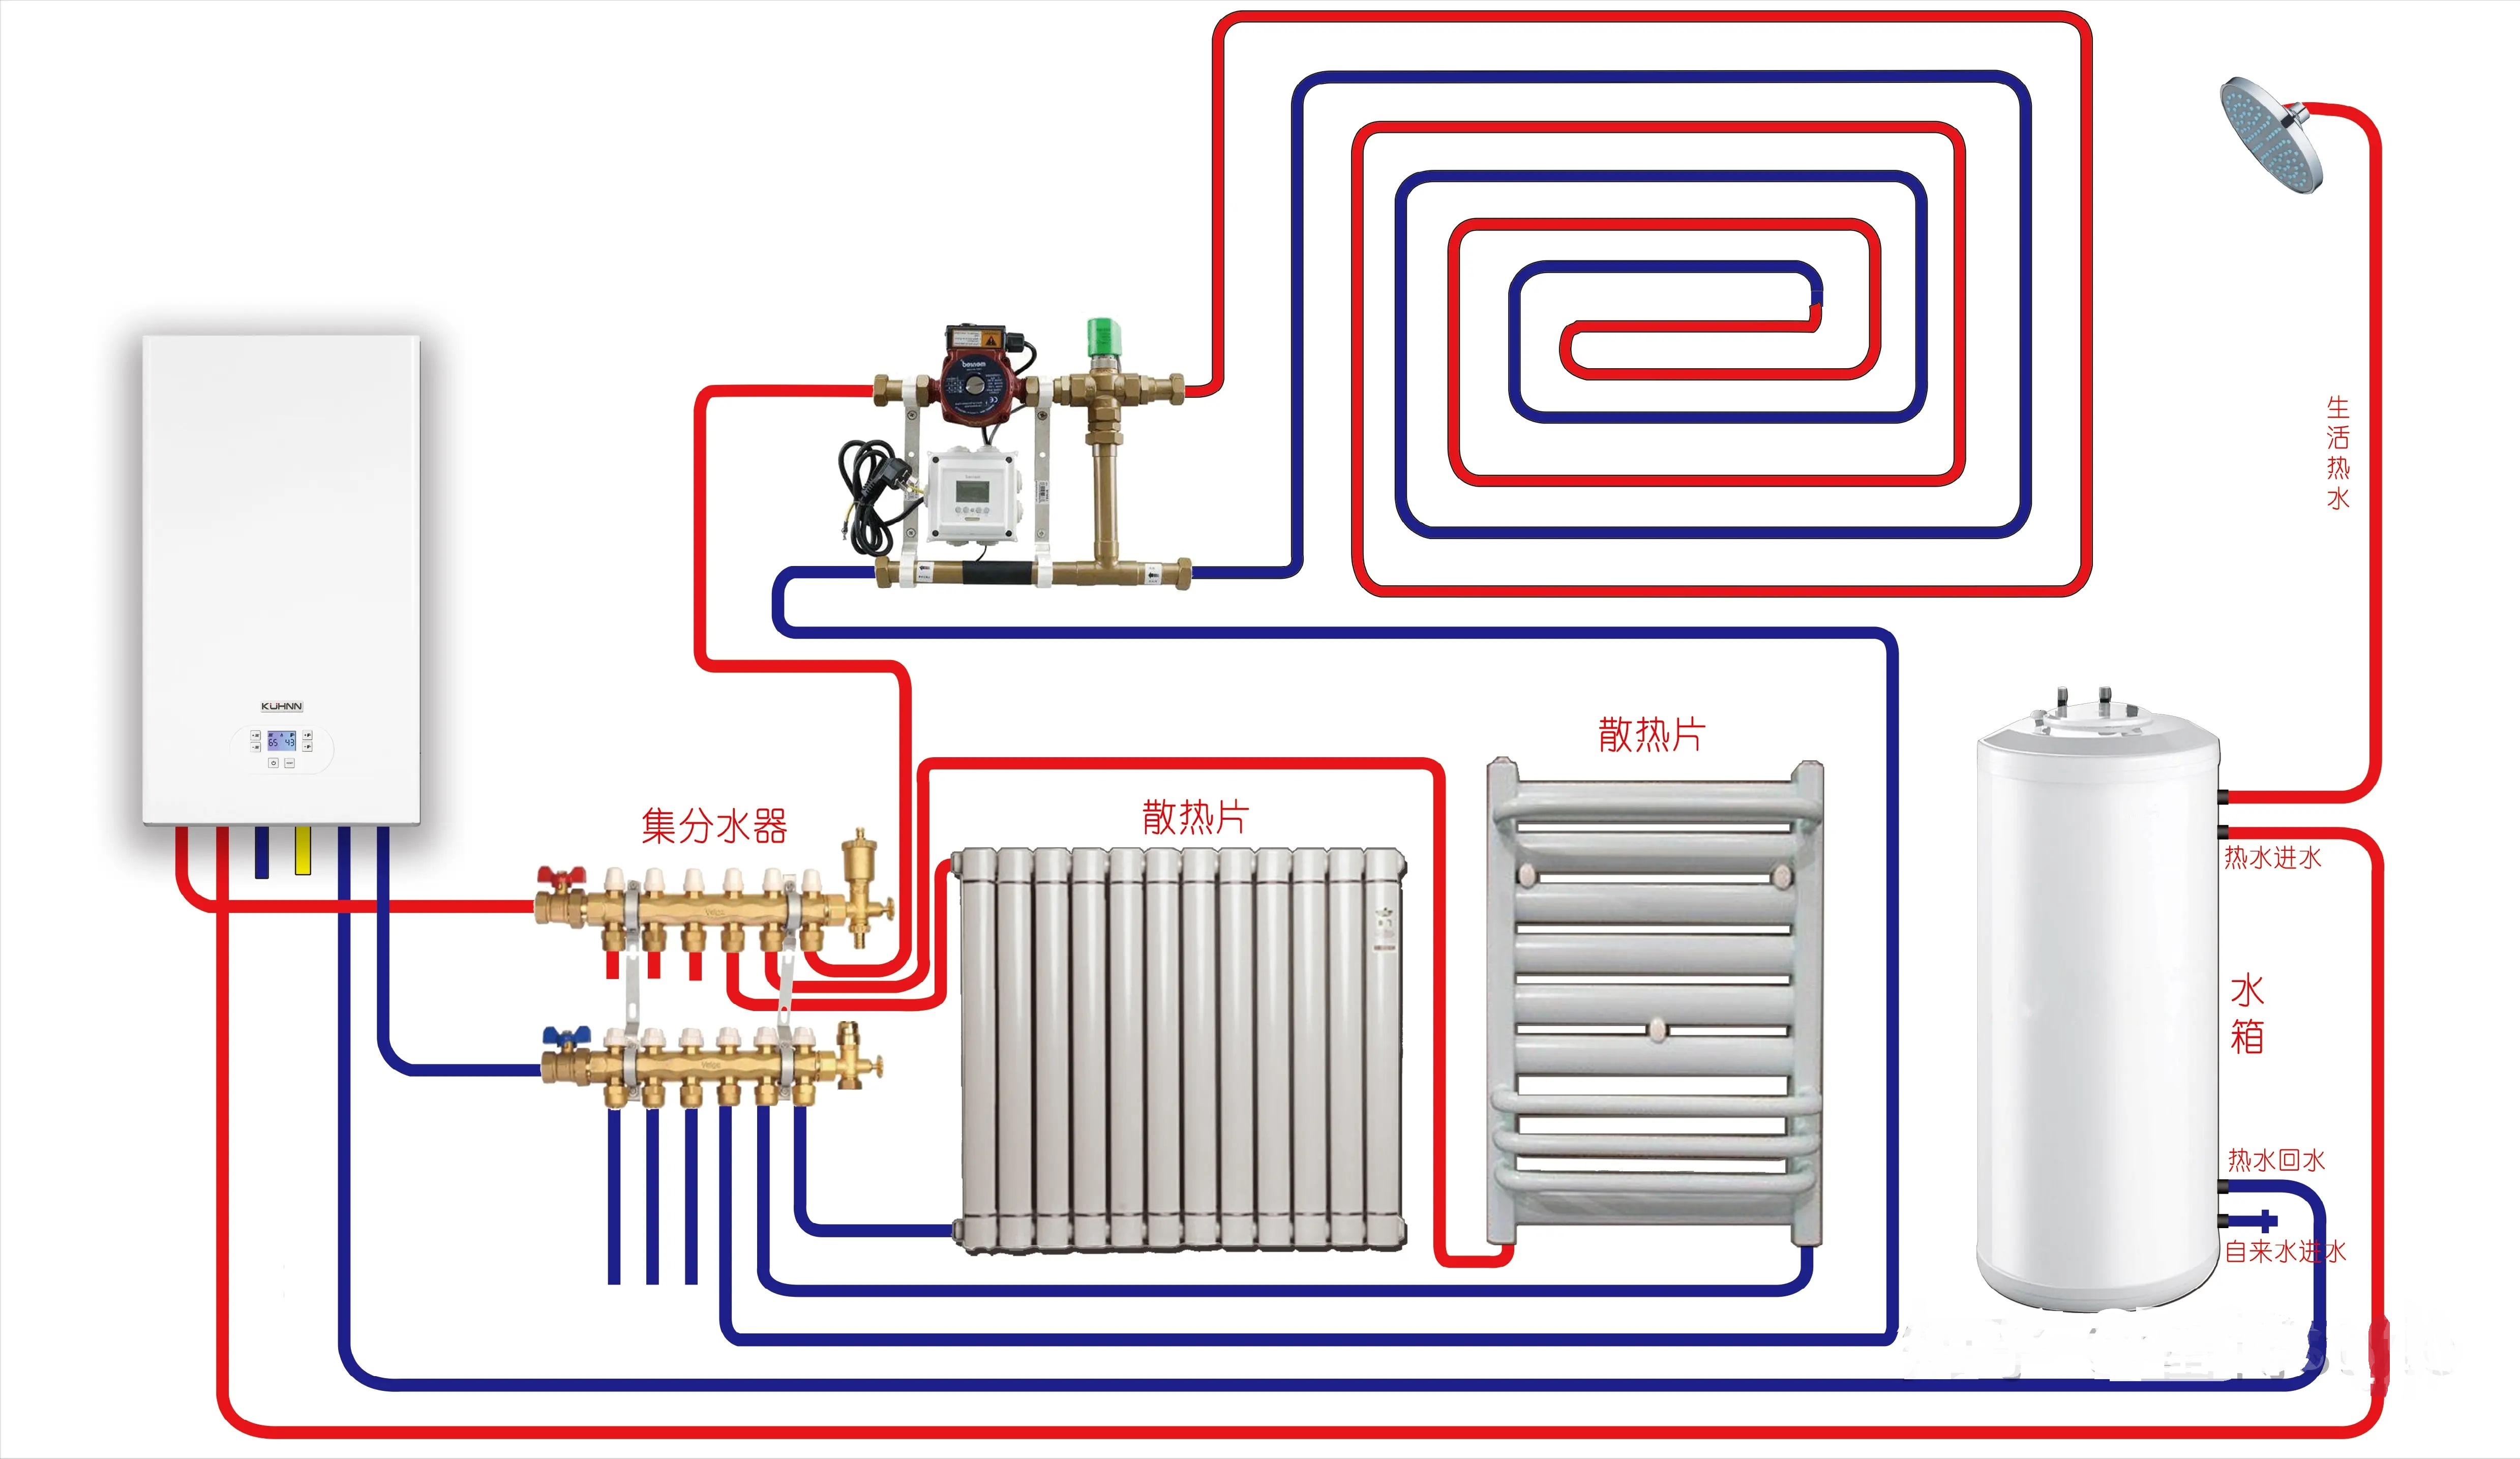 壁挂炉采暖时,一般地暖的温度宜设置为50℃左右,暖气片采暖系统宜设置